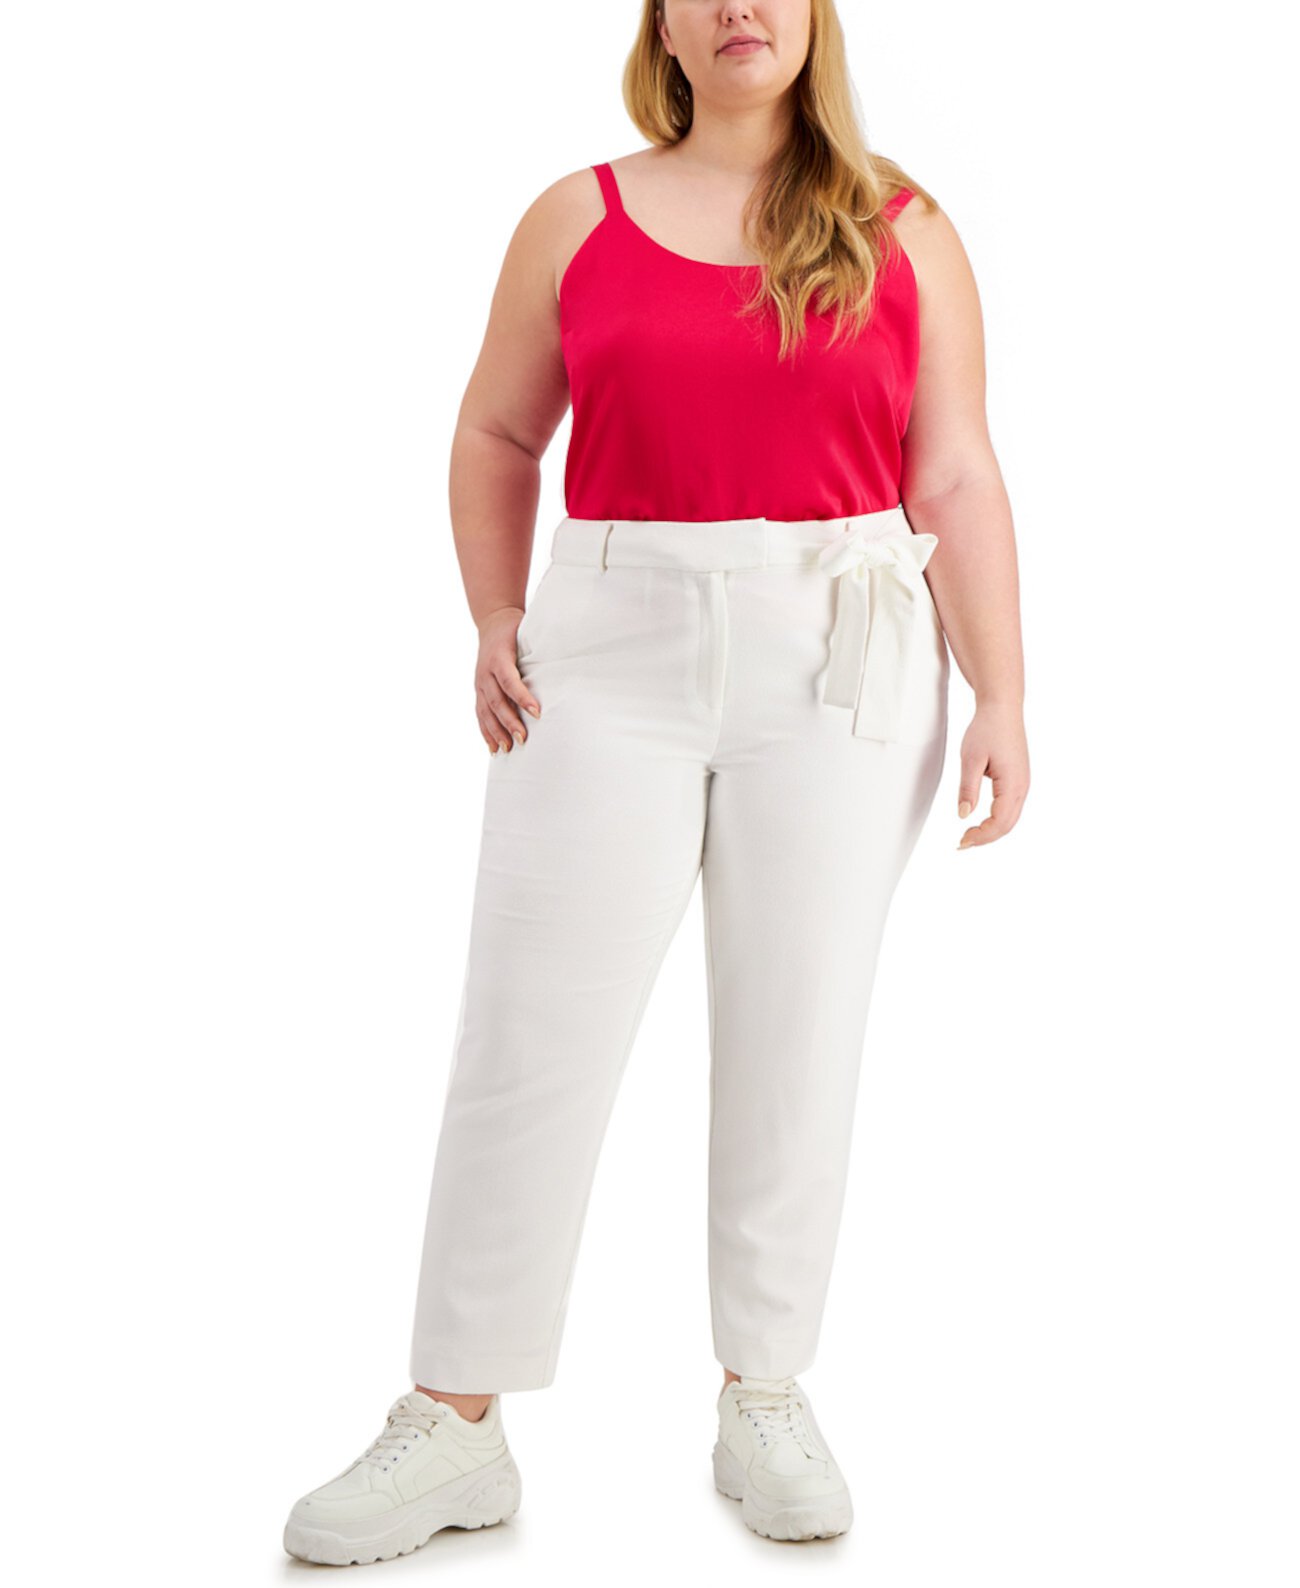 Узкие брюки большого размера с завязками по бокам, созданные для Macy's Bar III